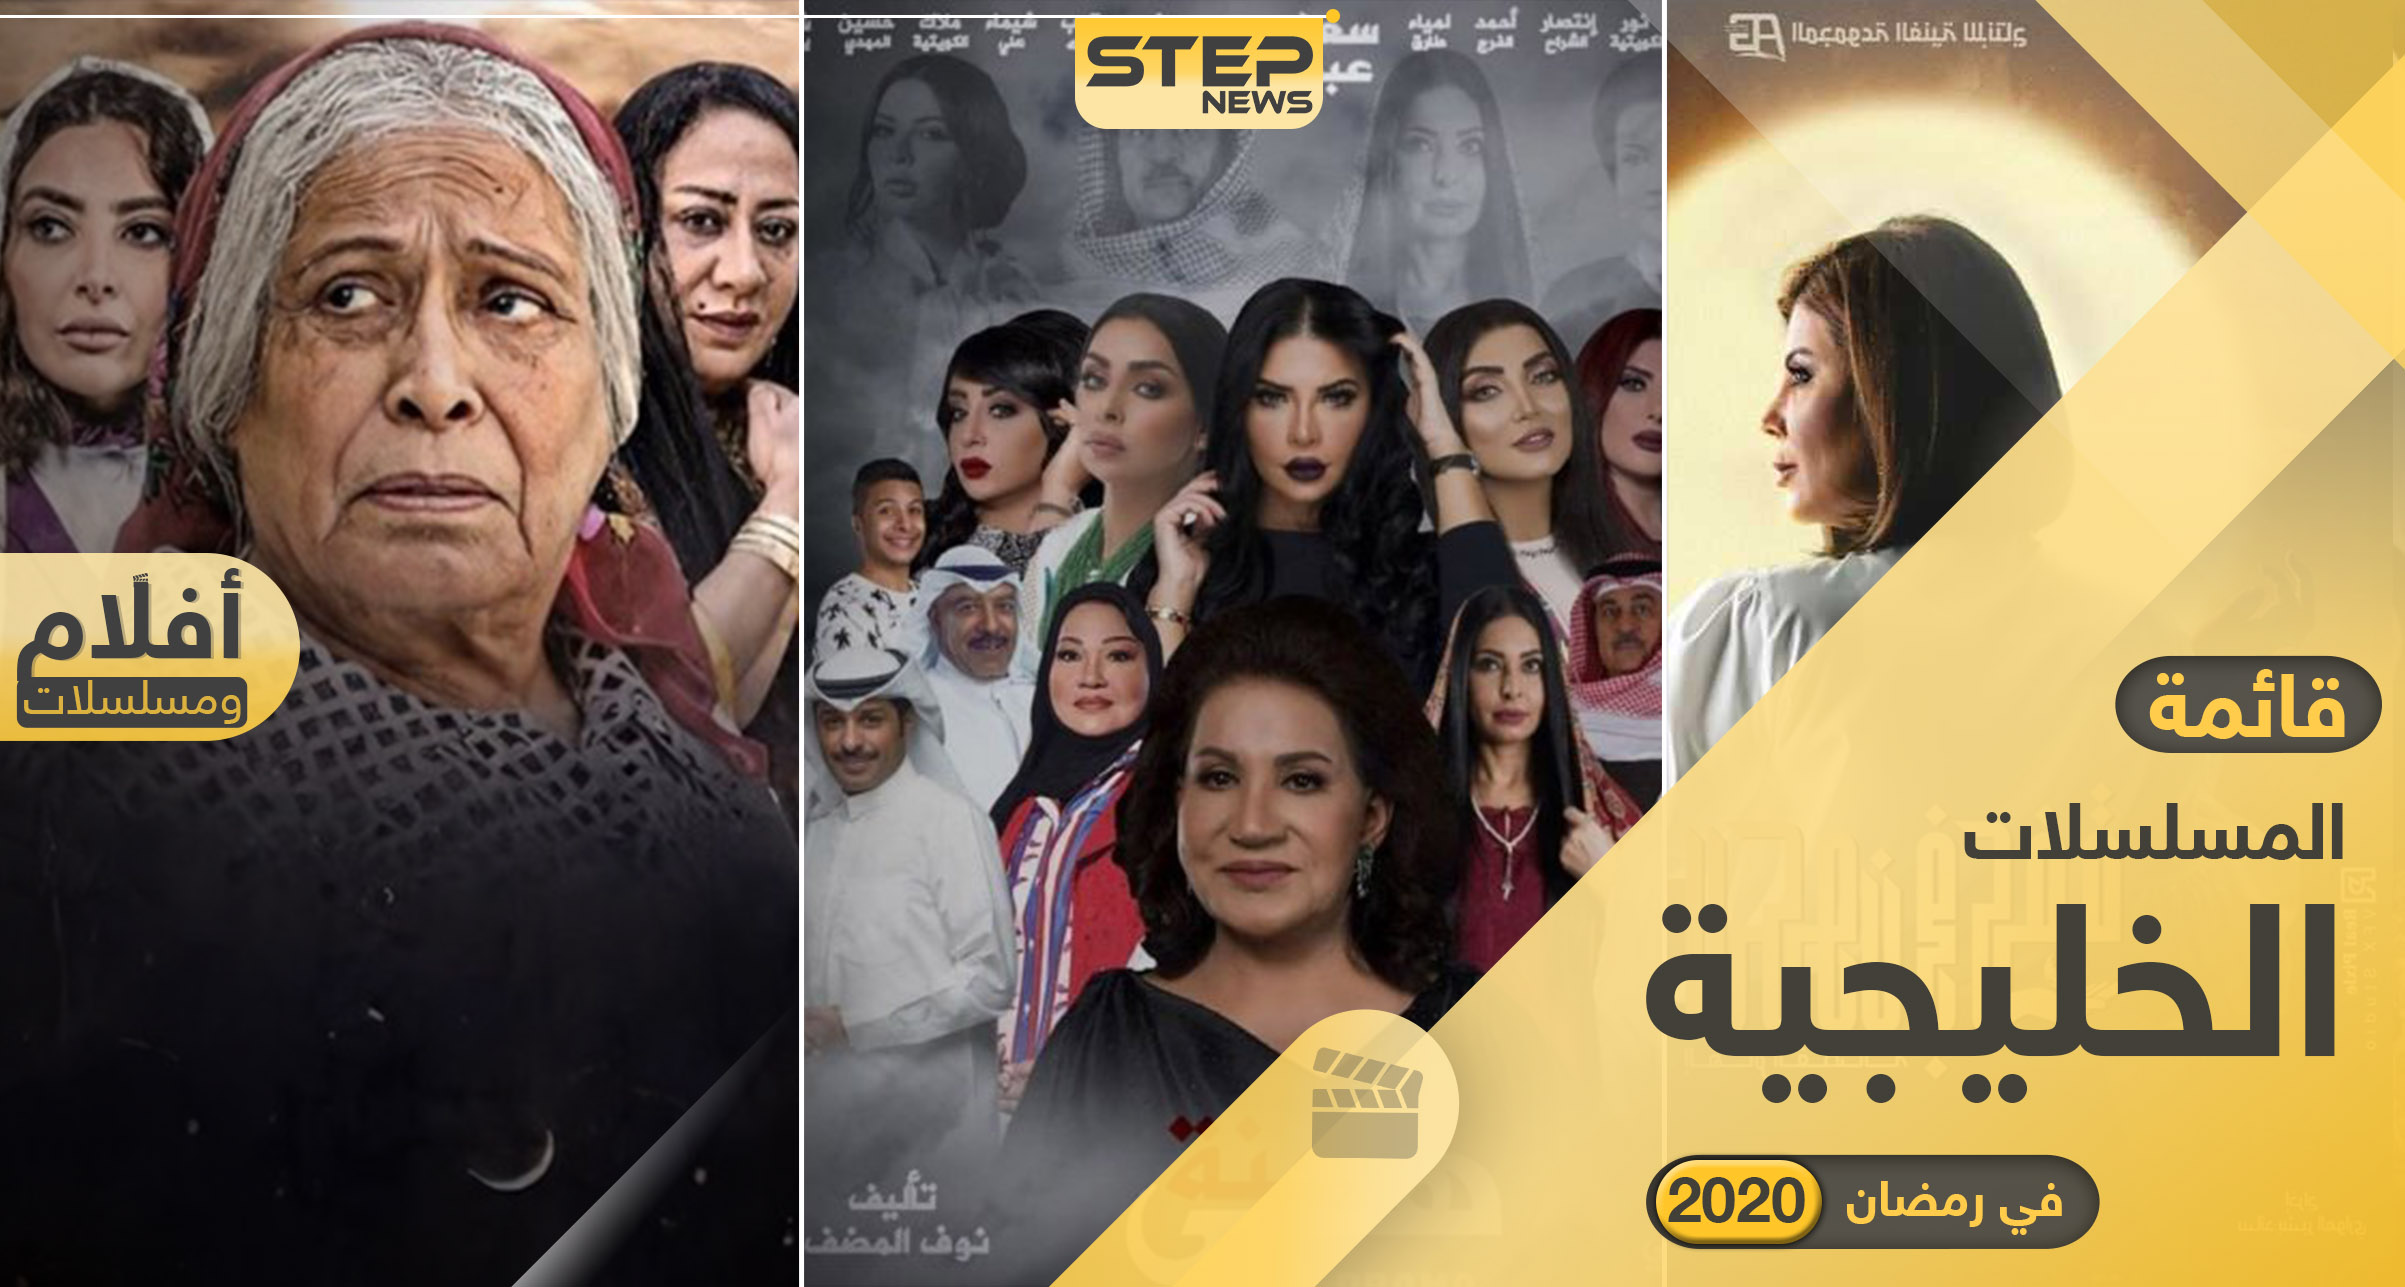 الخليجية 2021 المسلسلات في رمضان المسلسلات الخليجية